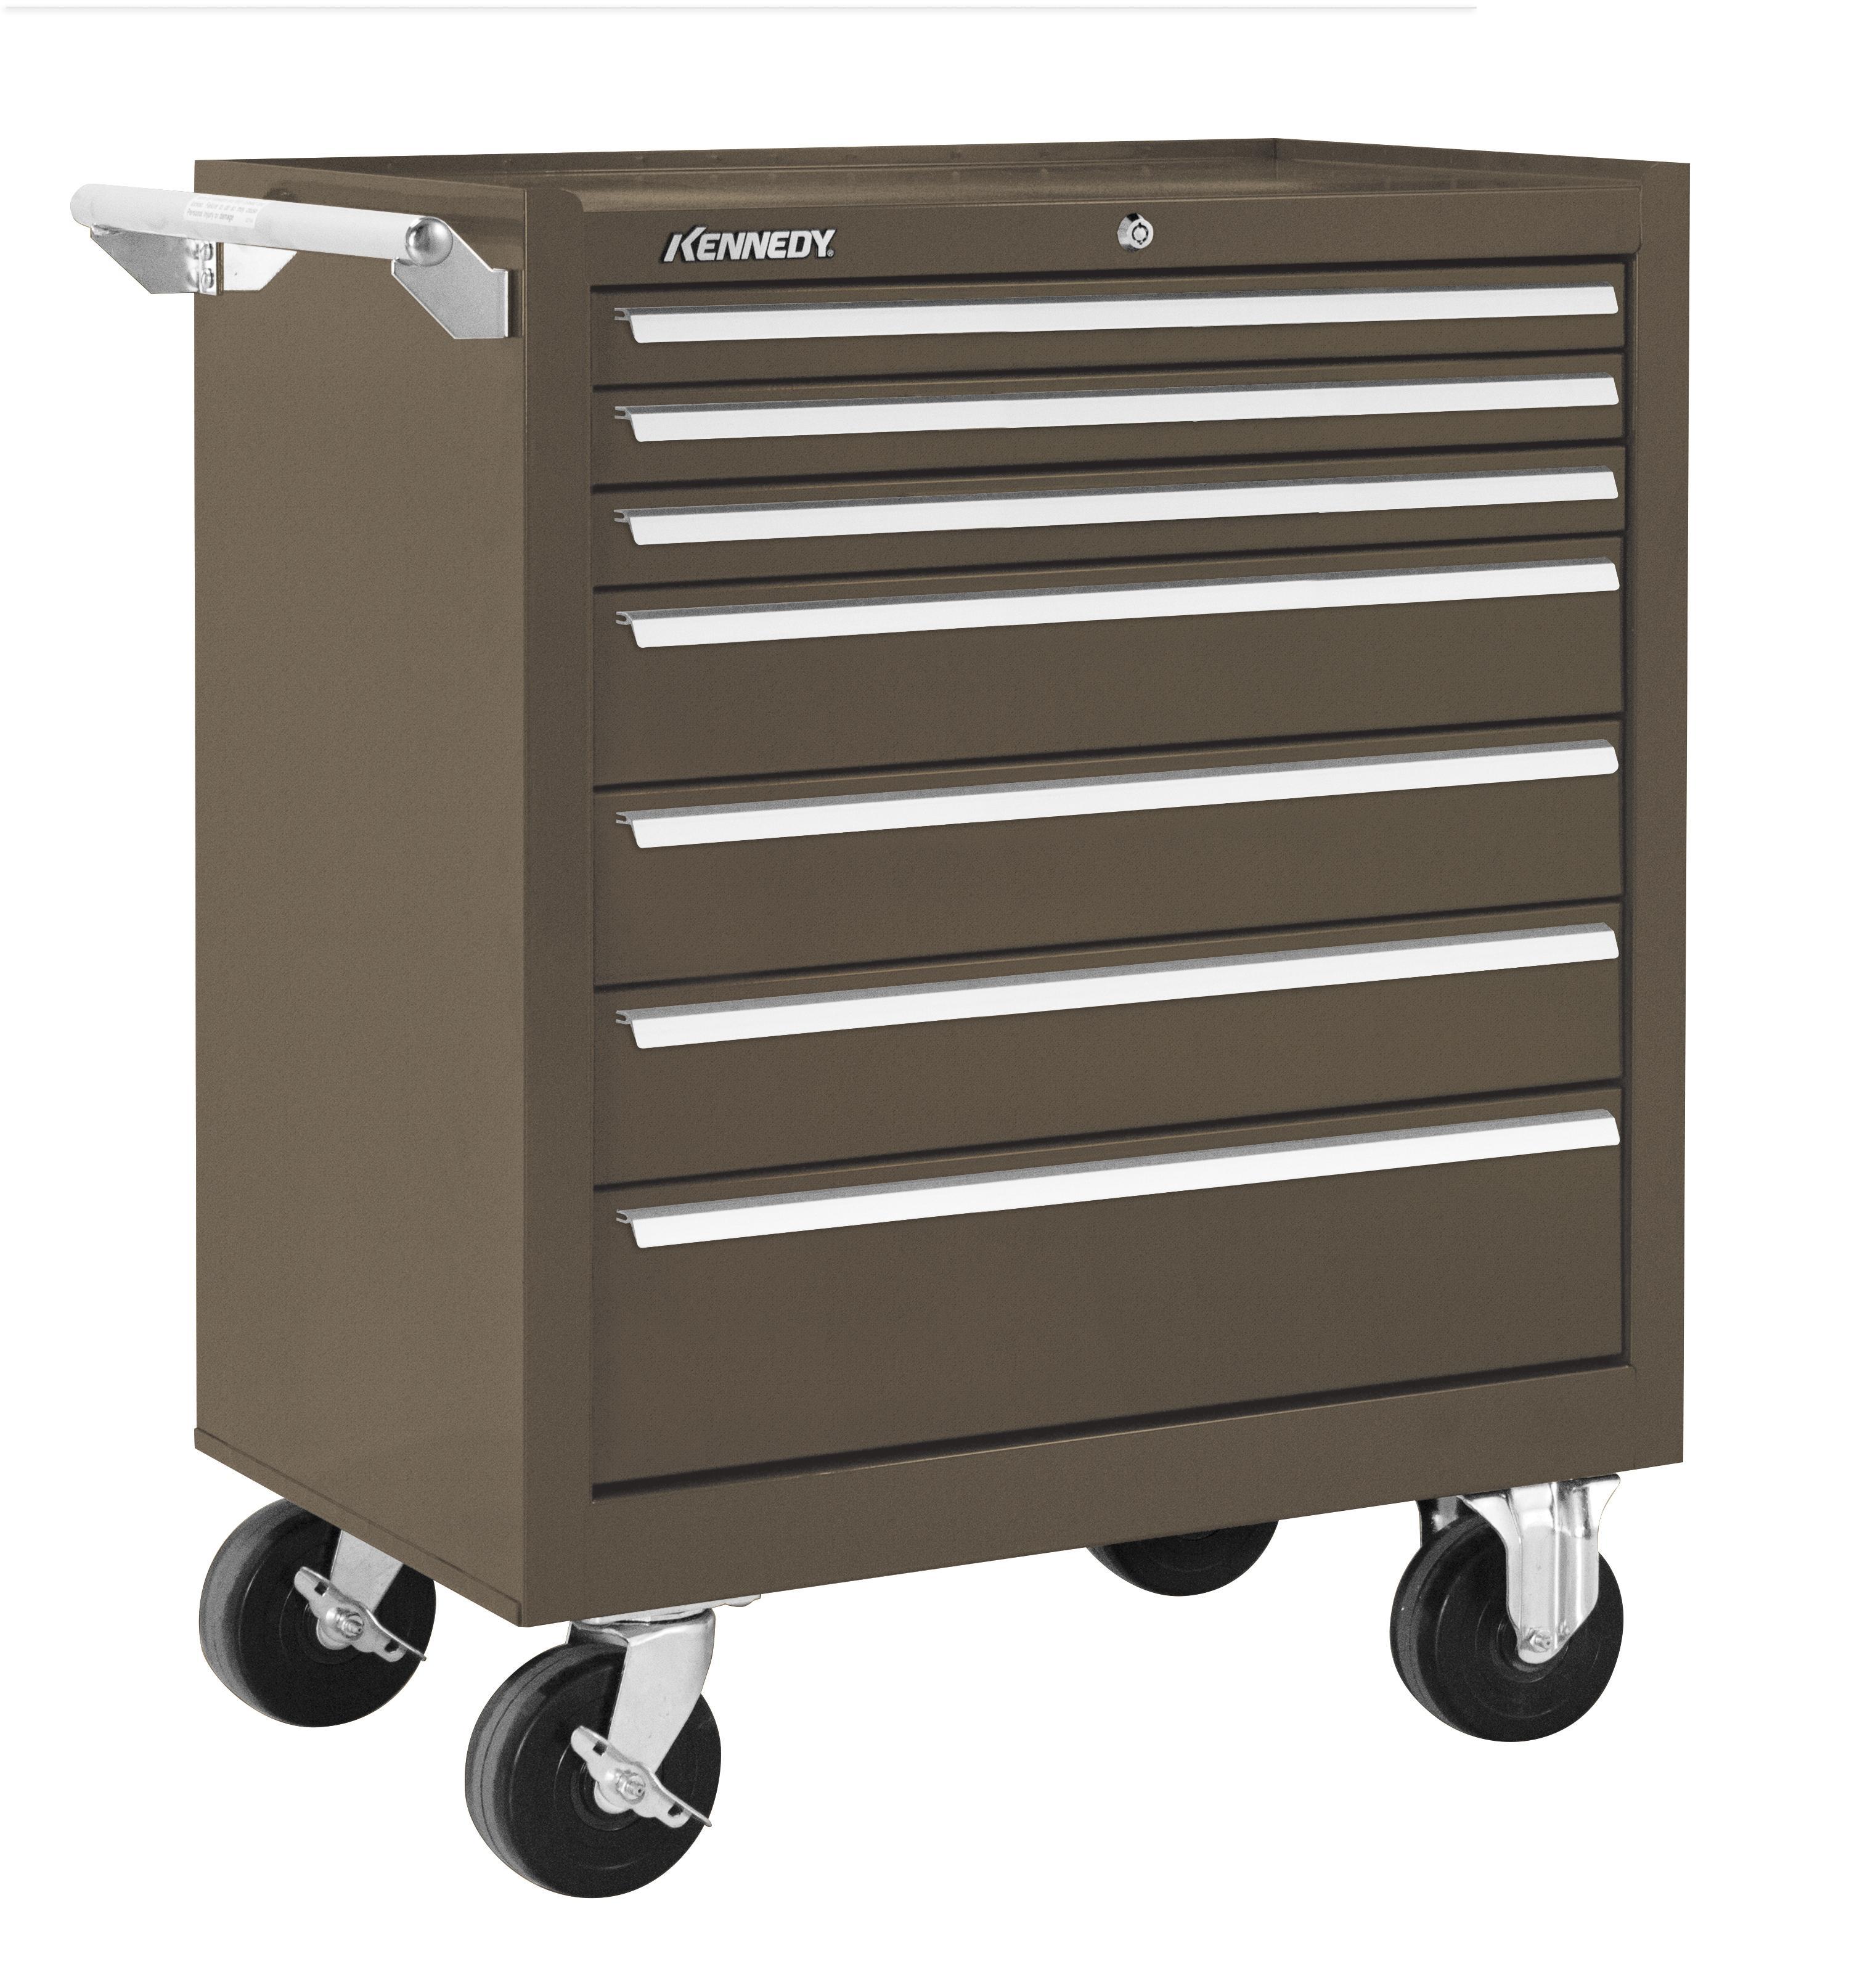 Kennedy® 295BL K2000 Industrial Heavy Duty Roller Cabinet, 35 in H x 29 in W x 20 in D, 18 ga THK, Polypropylene Caster/Steel